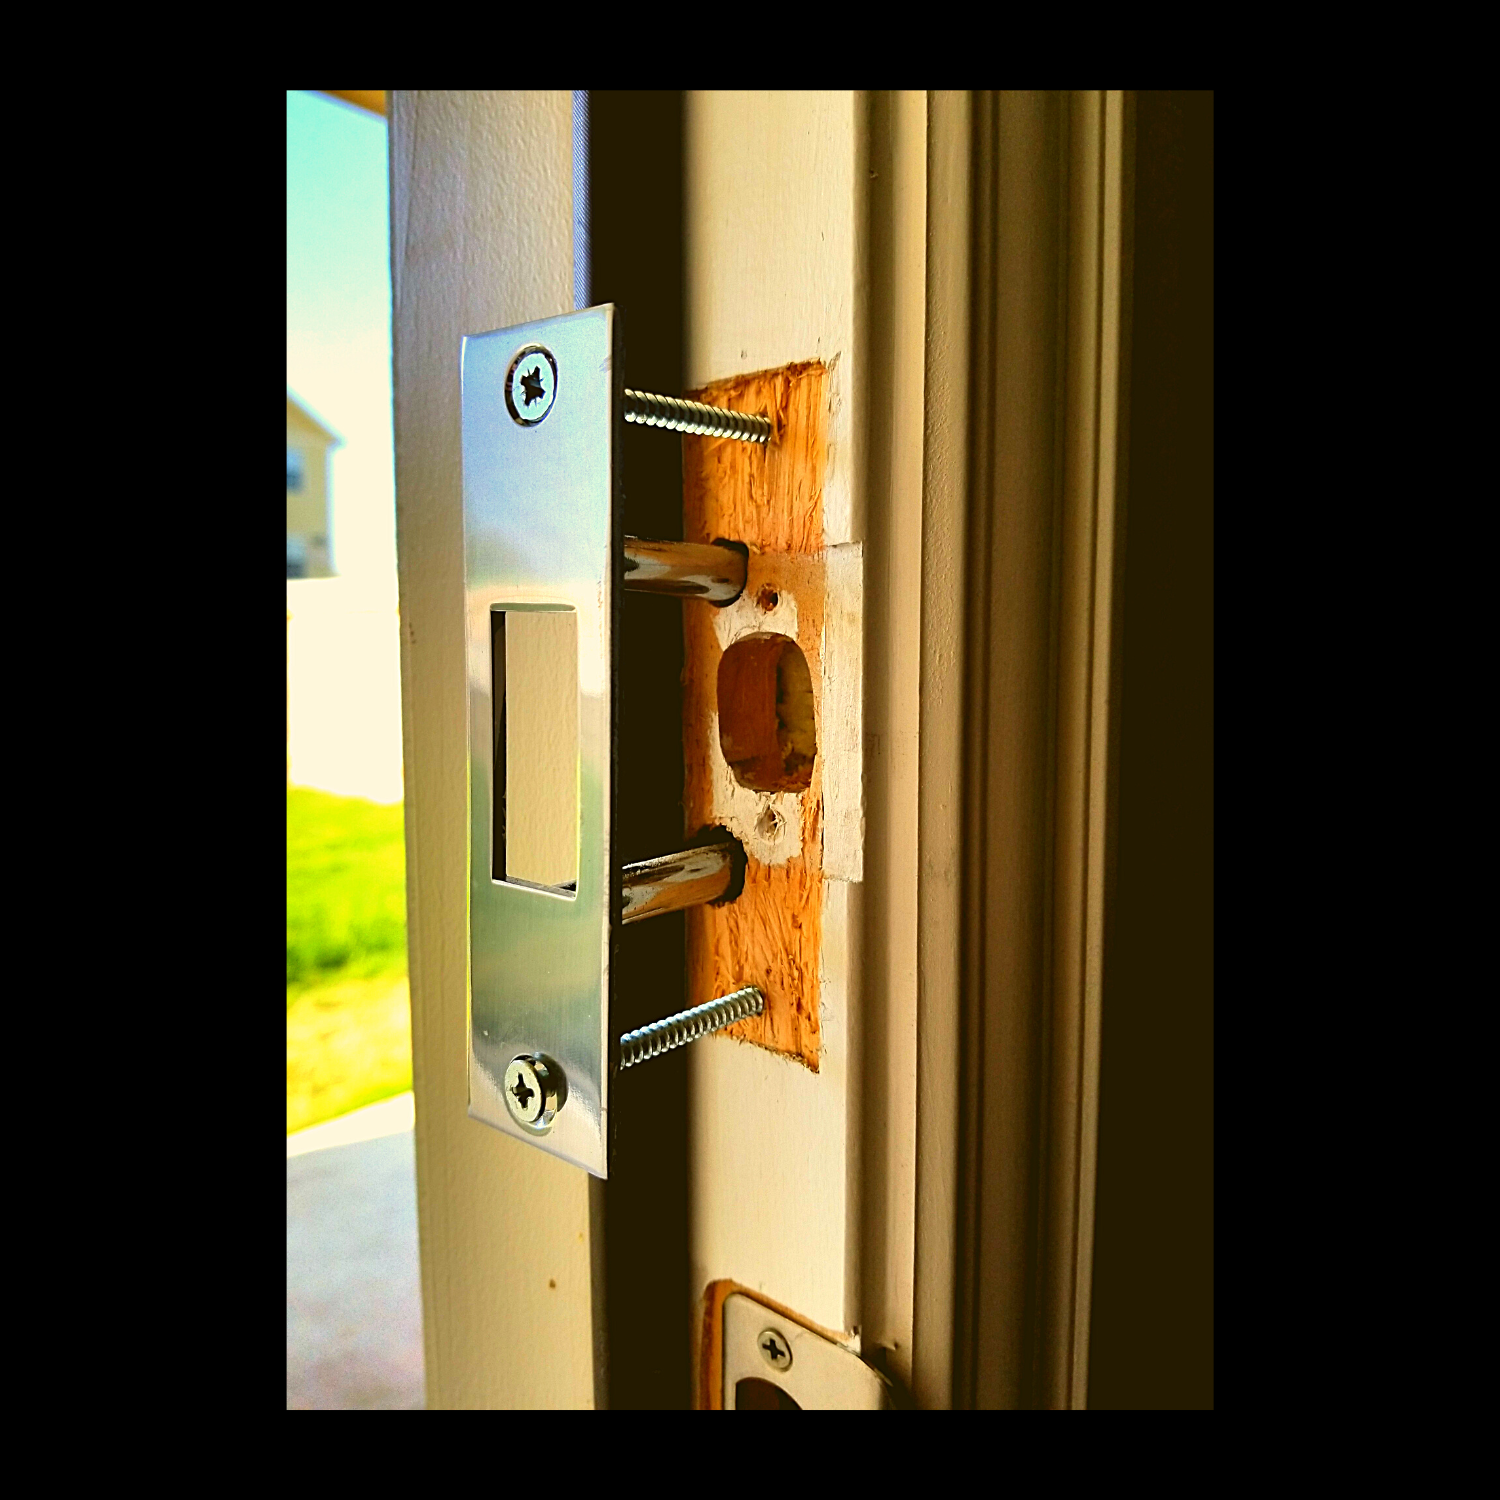 door reinforcement deadbolt reinforcer home security device kick proof door hardware burglary prevention security system